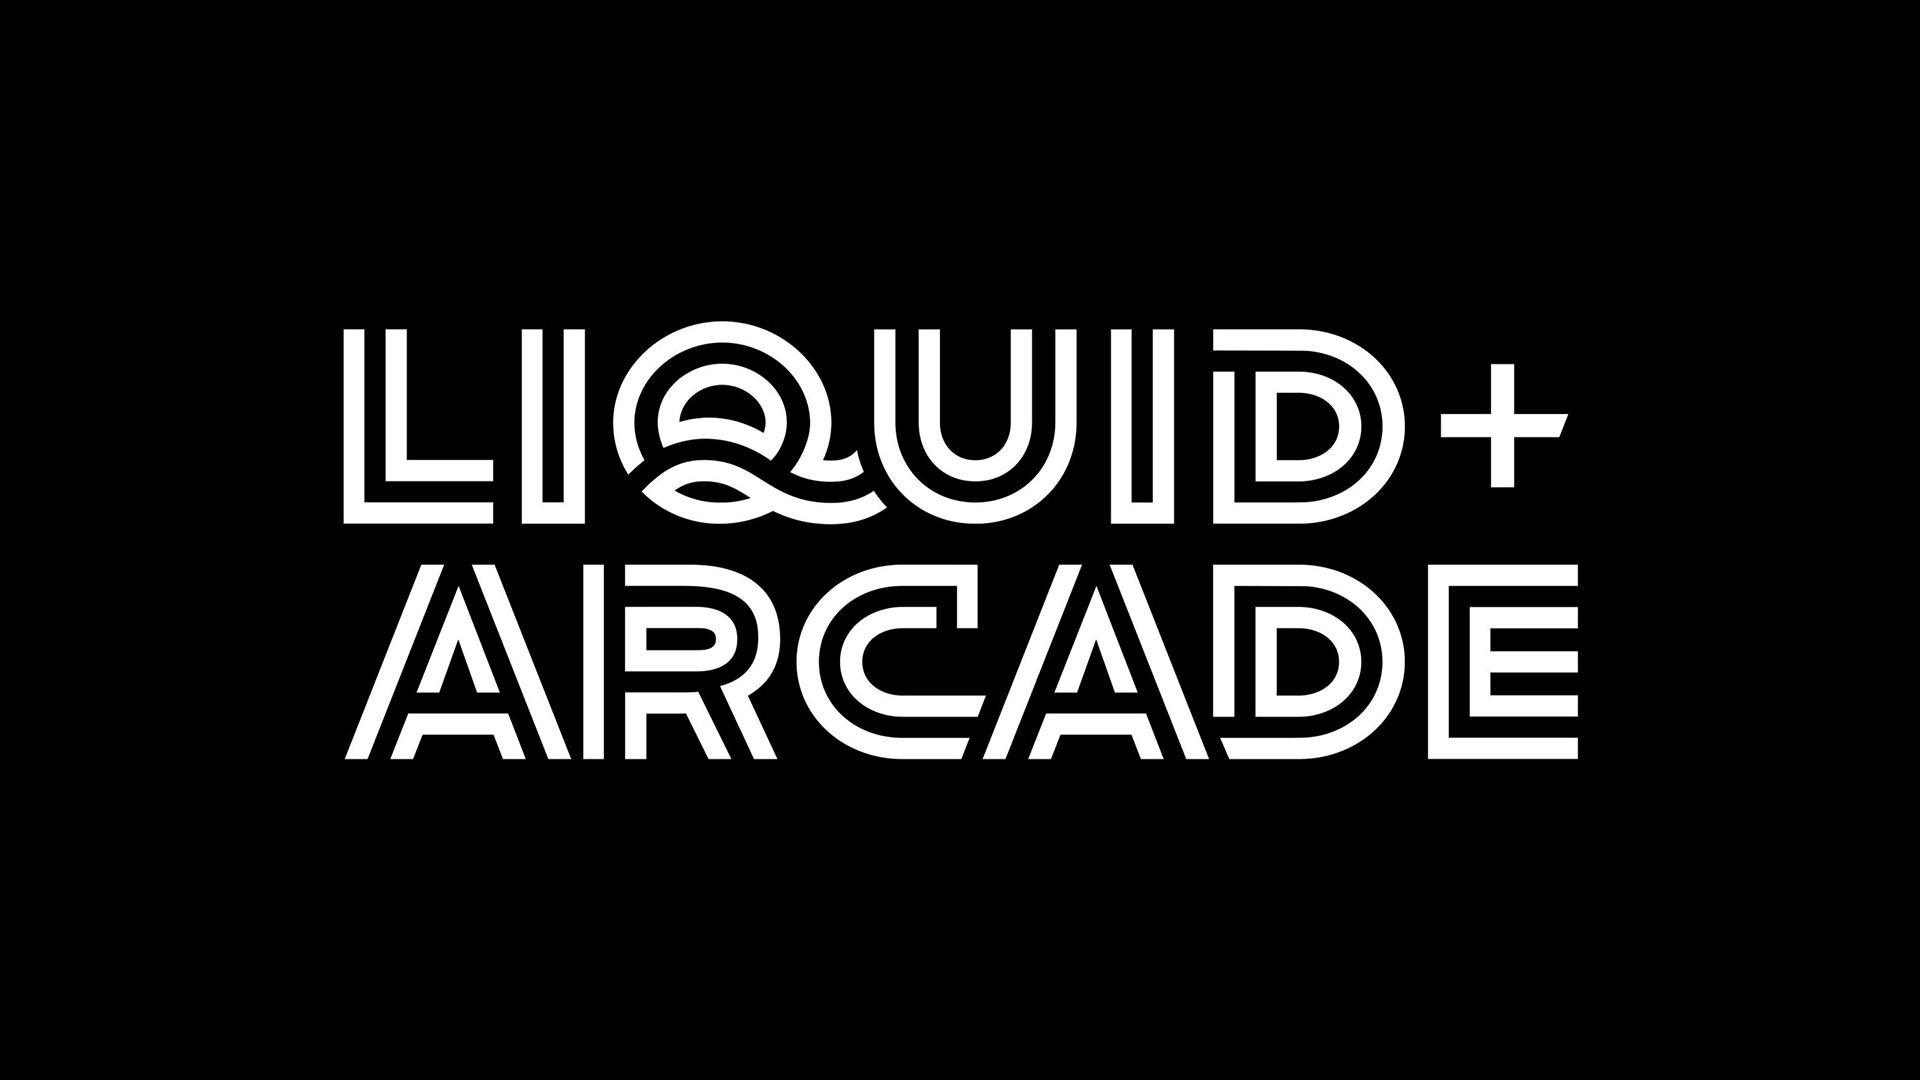 Liquid+Arcade